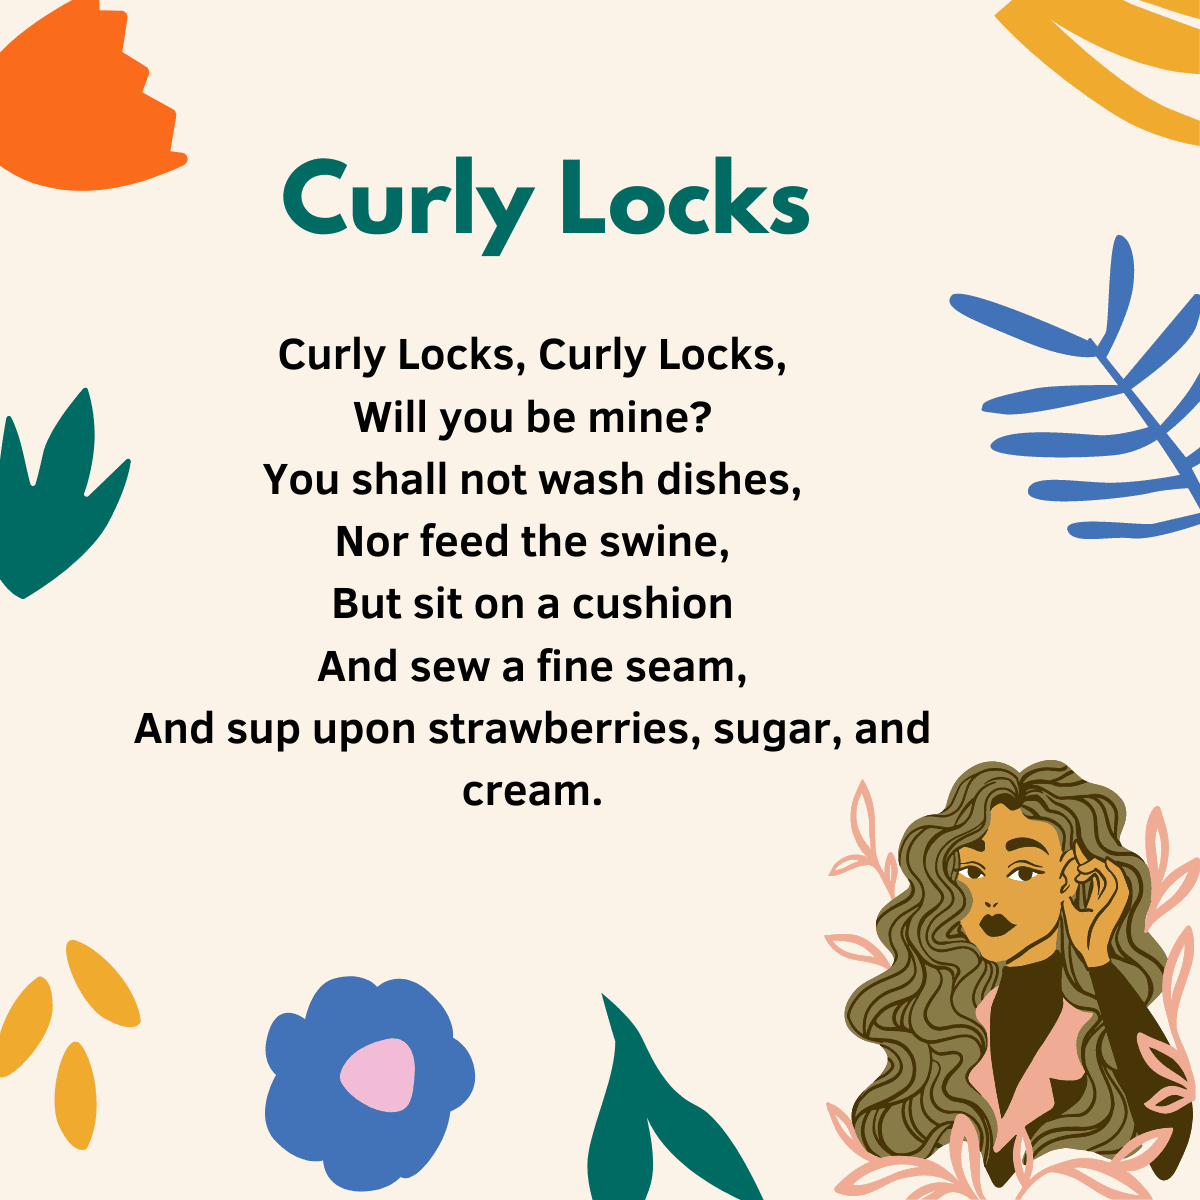 Curly locks lyrics